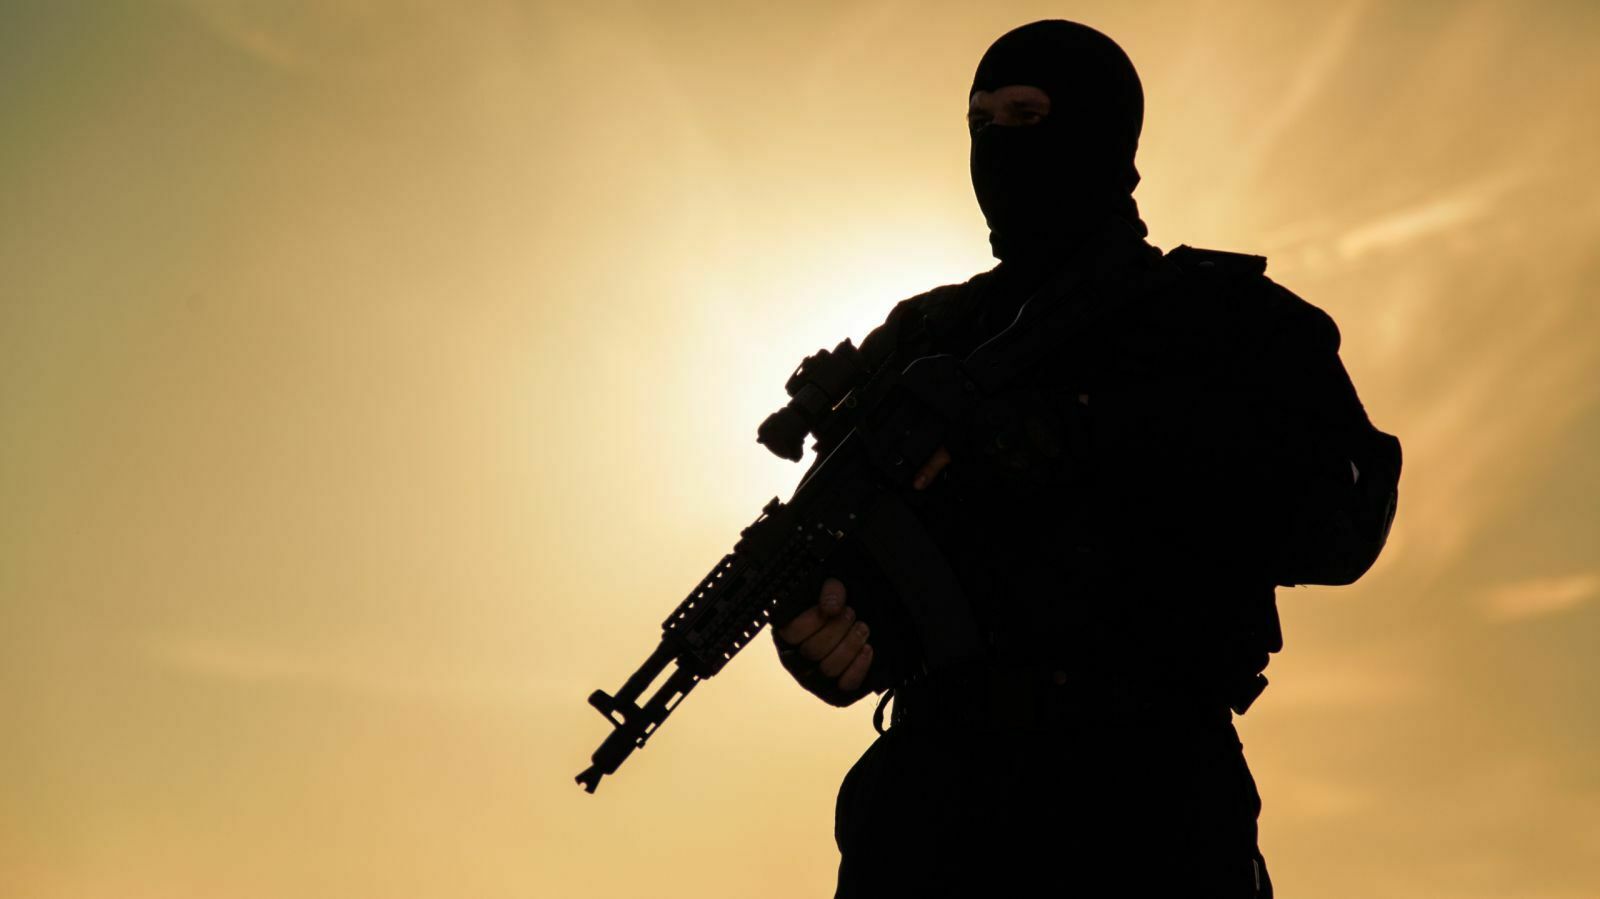 ФСБ задержала в Карачаево-Черкесии участника ИГ*